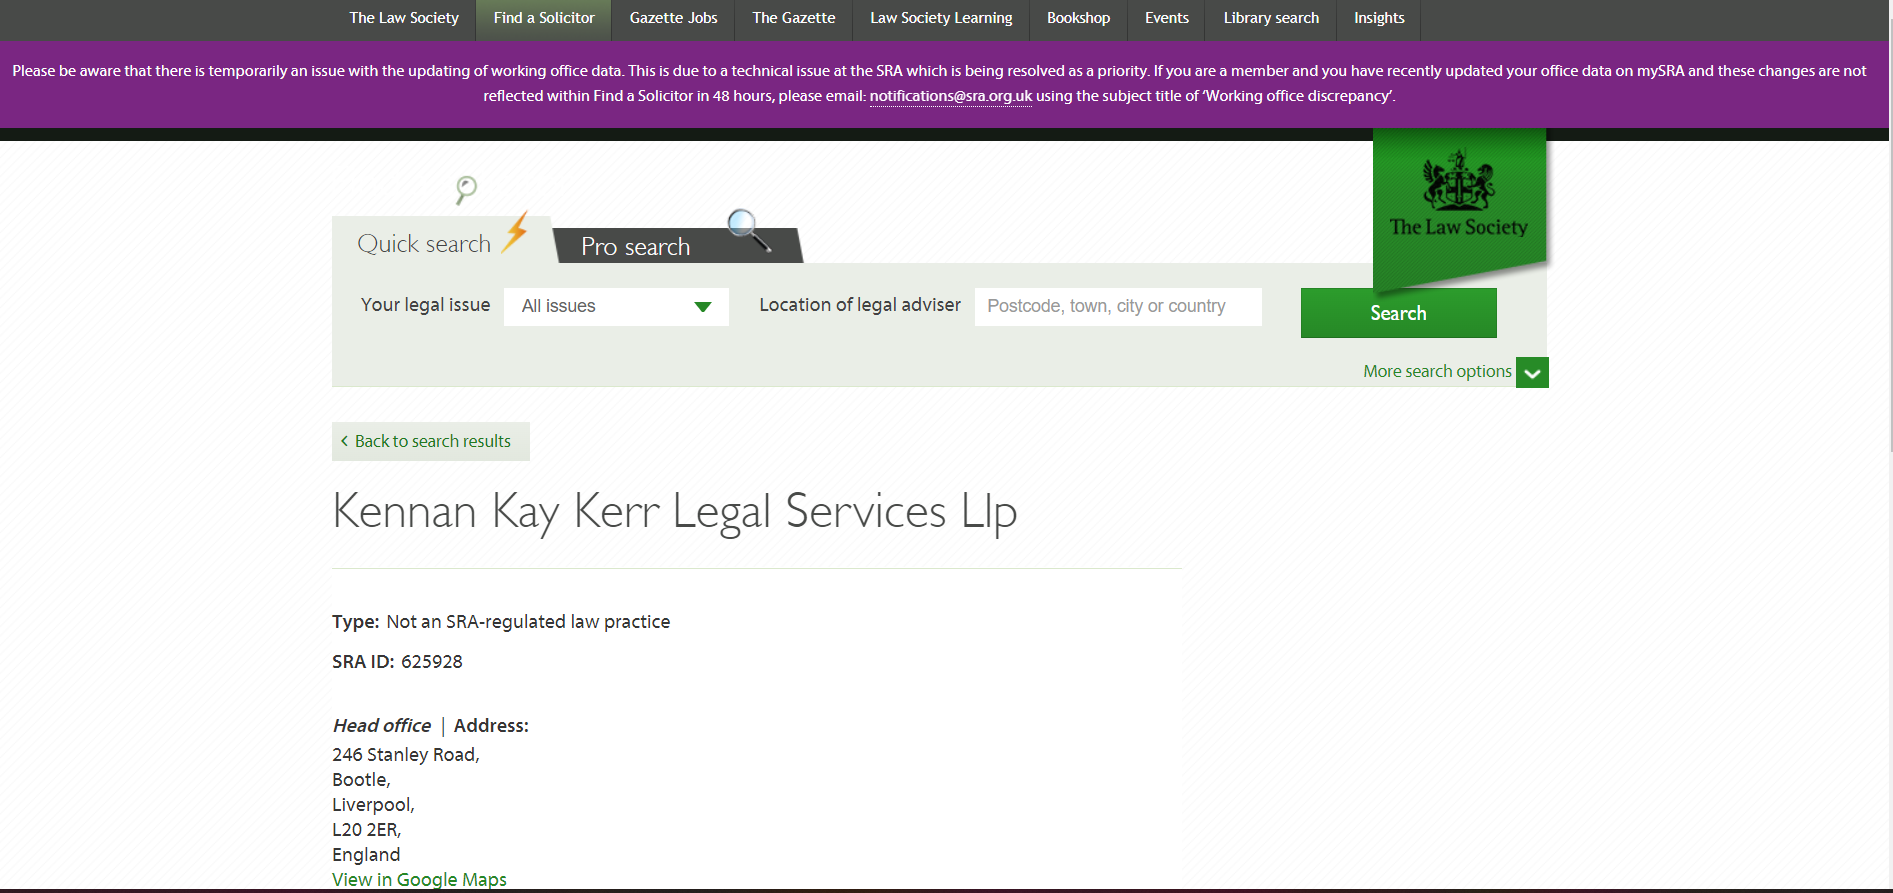 Kennan Kay Kerr Legal Services